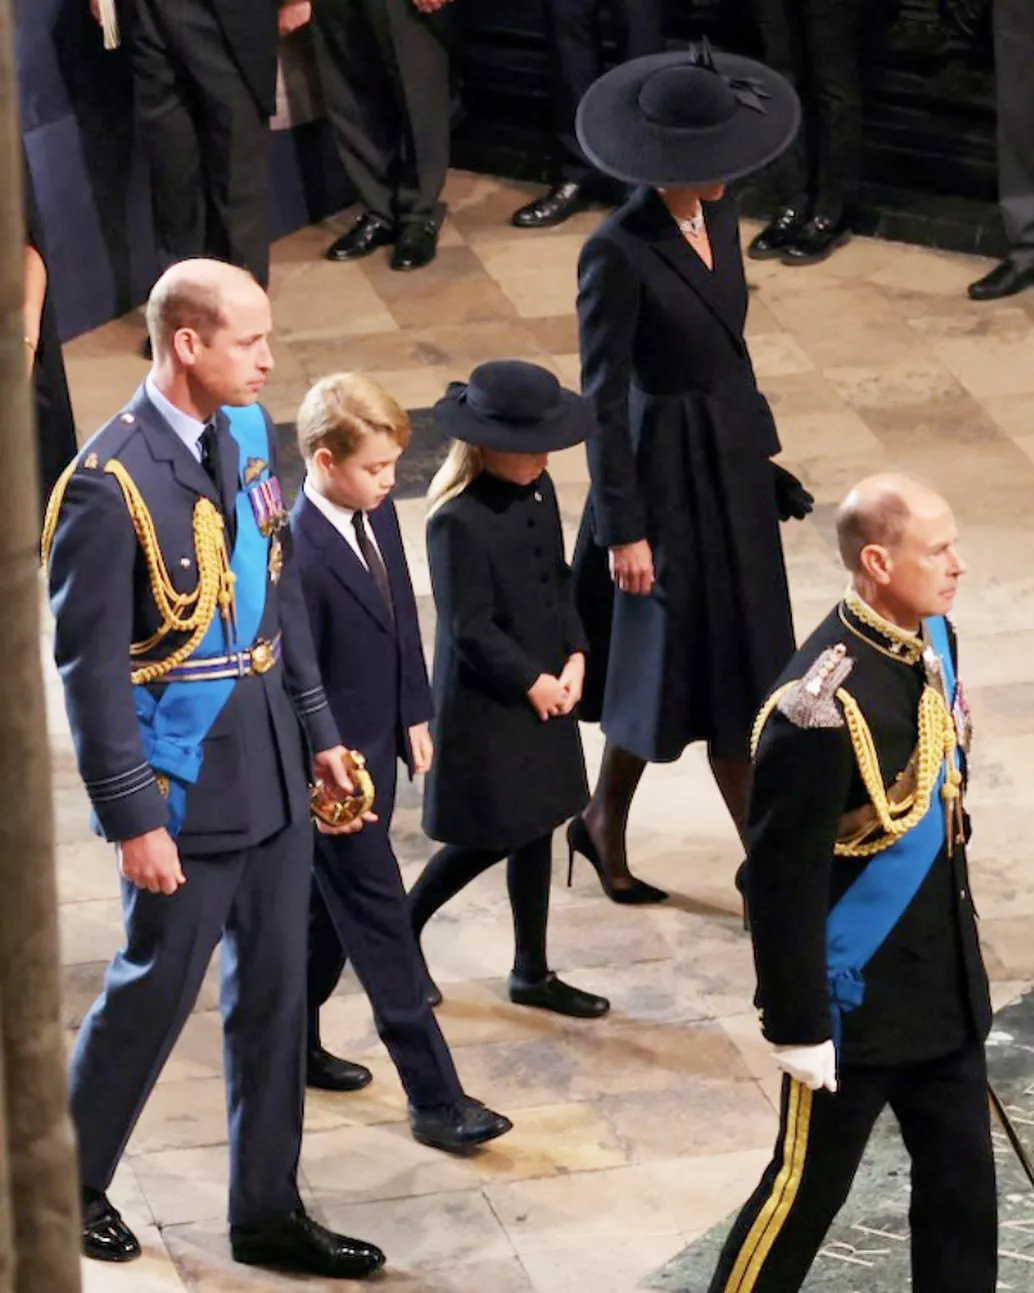 الأميرة شارلوت تلفت الأنظار في مراسم جنازة الملكة اليزابيث وتقدّم تحية إجلال لها